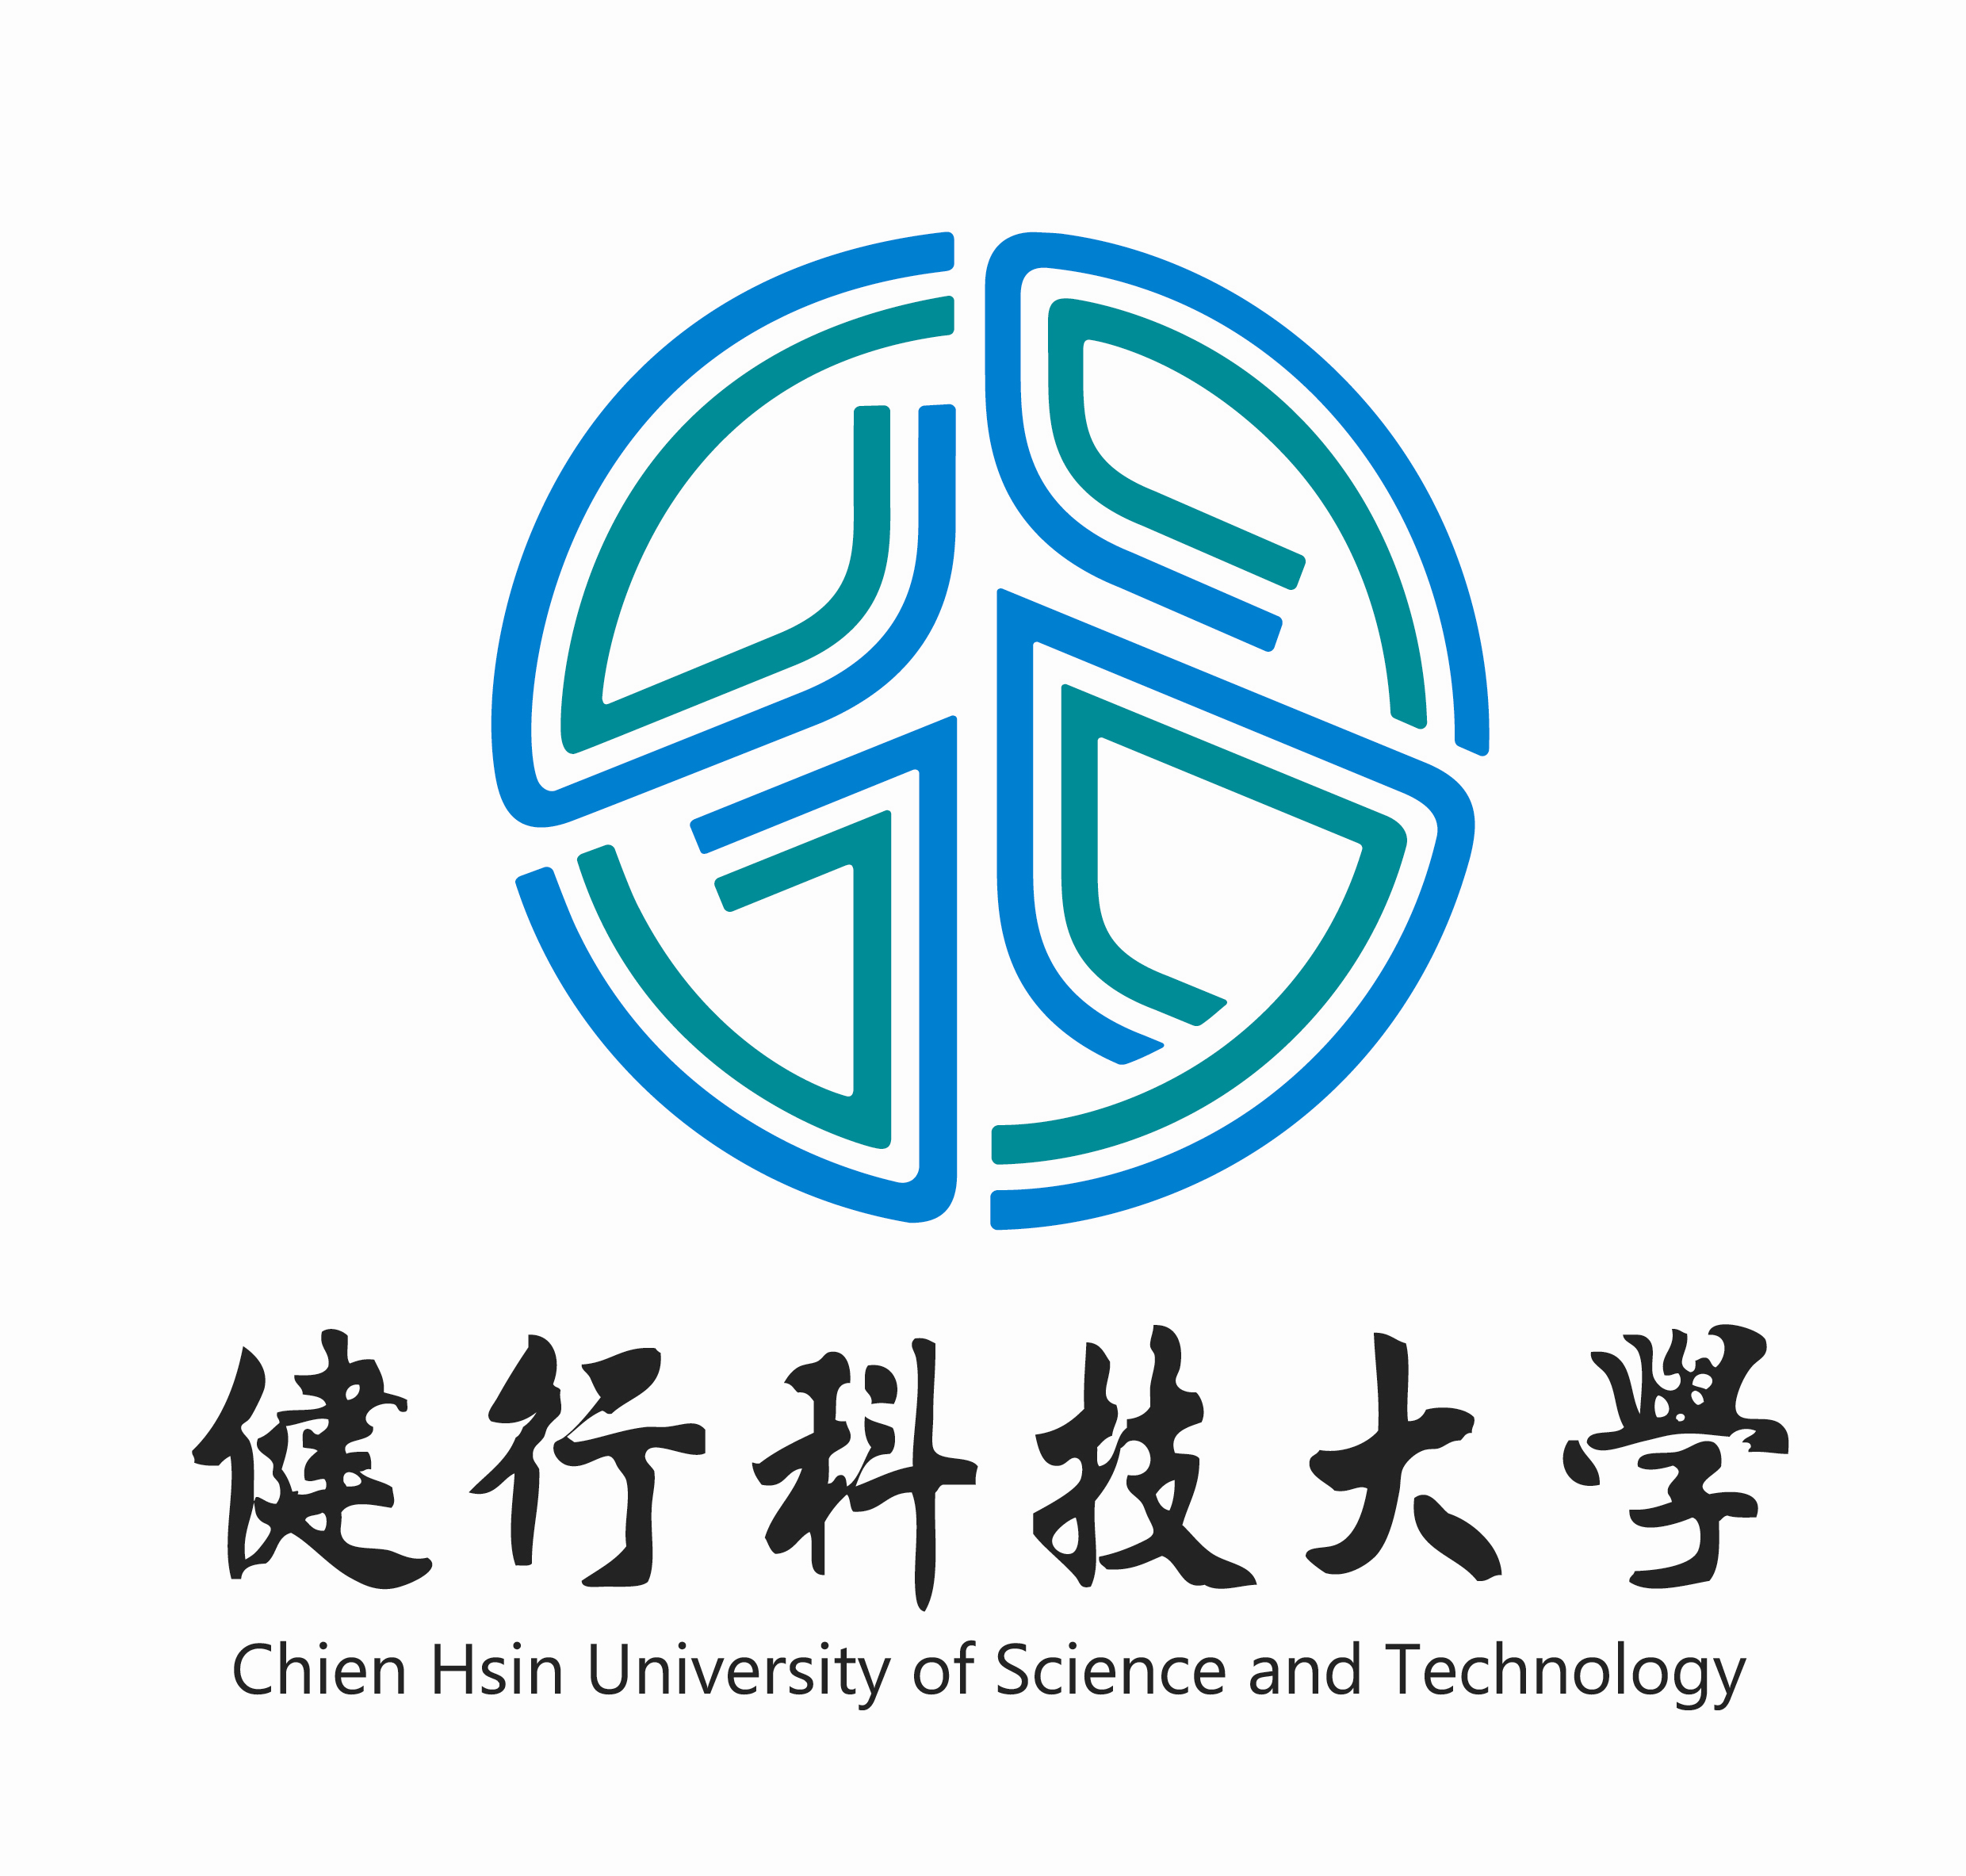 Đại học khoa học kỹ thuật Kiện Hành Logo